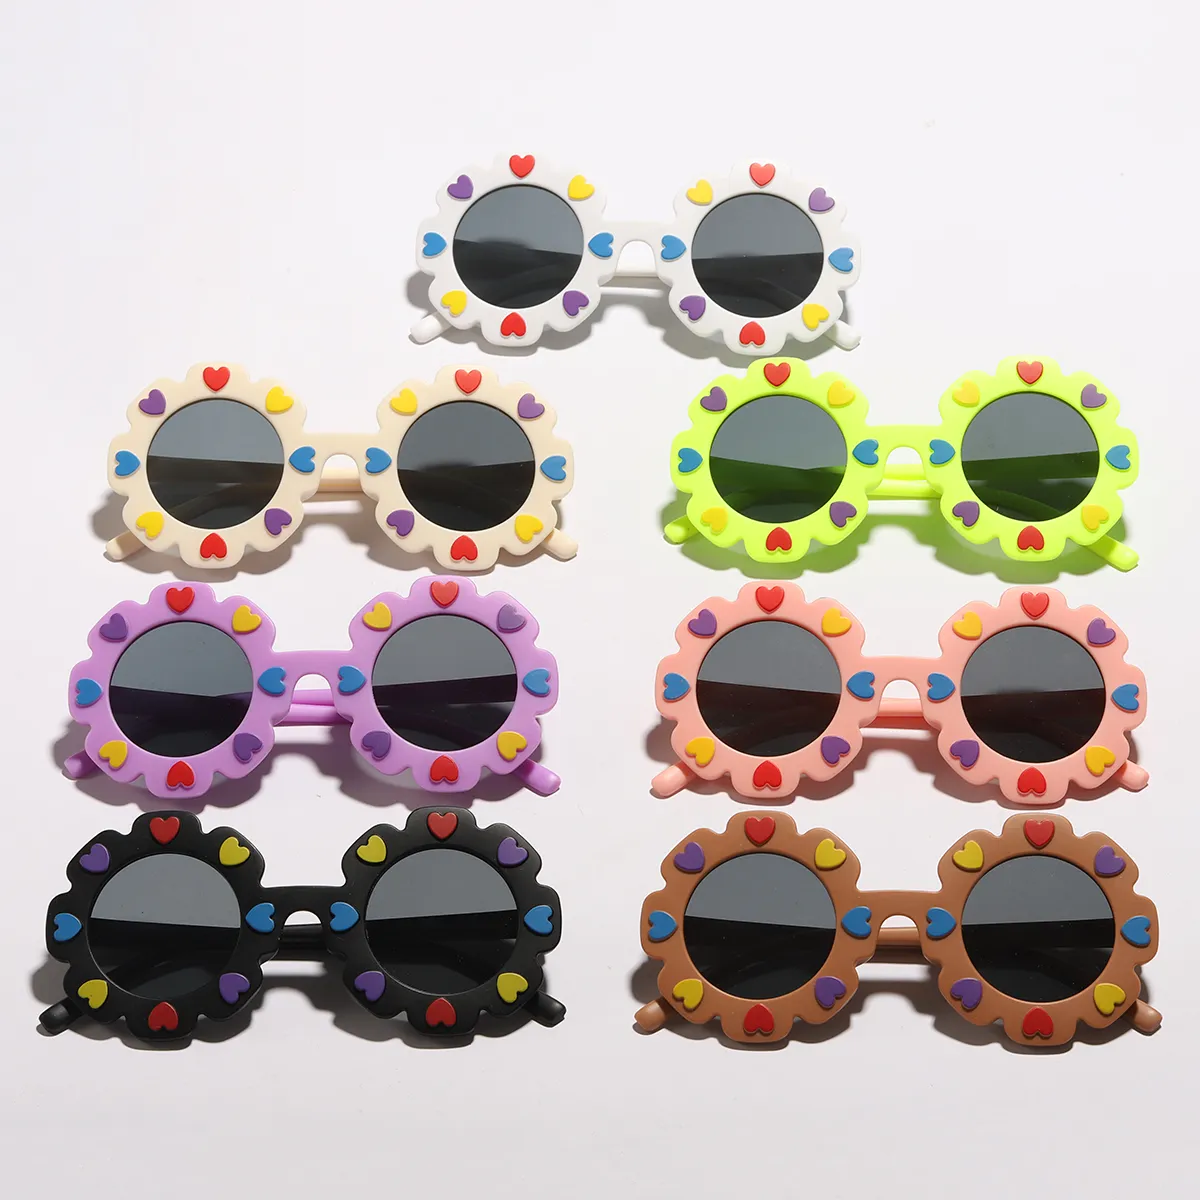 نظارات بإطار زهري للأطفال الصغار / الأطفال (مع علبة نظارة) أسود big image 1